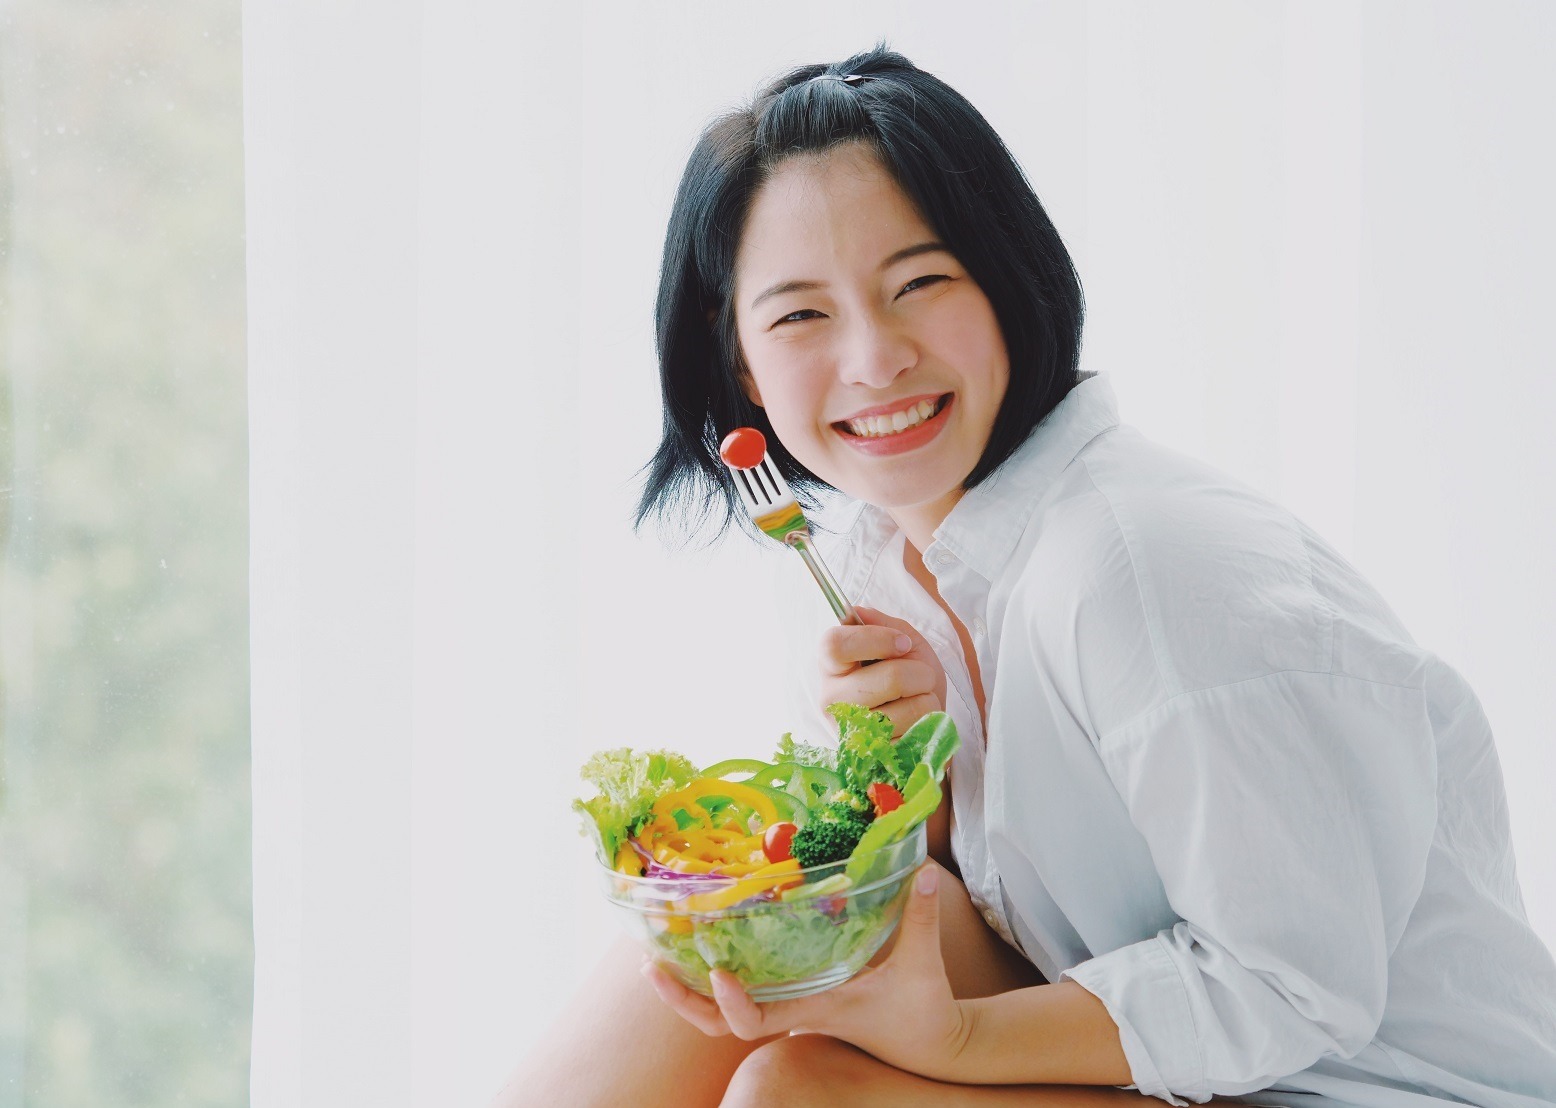 O regulă dietetică japoneză te poate ajuta să te menții suplu și să trăiești 100 de ani